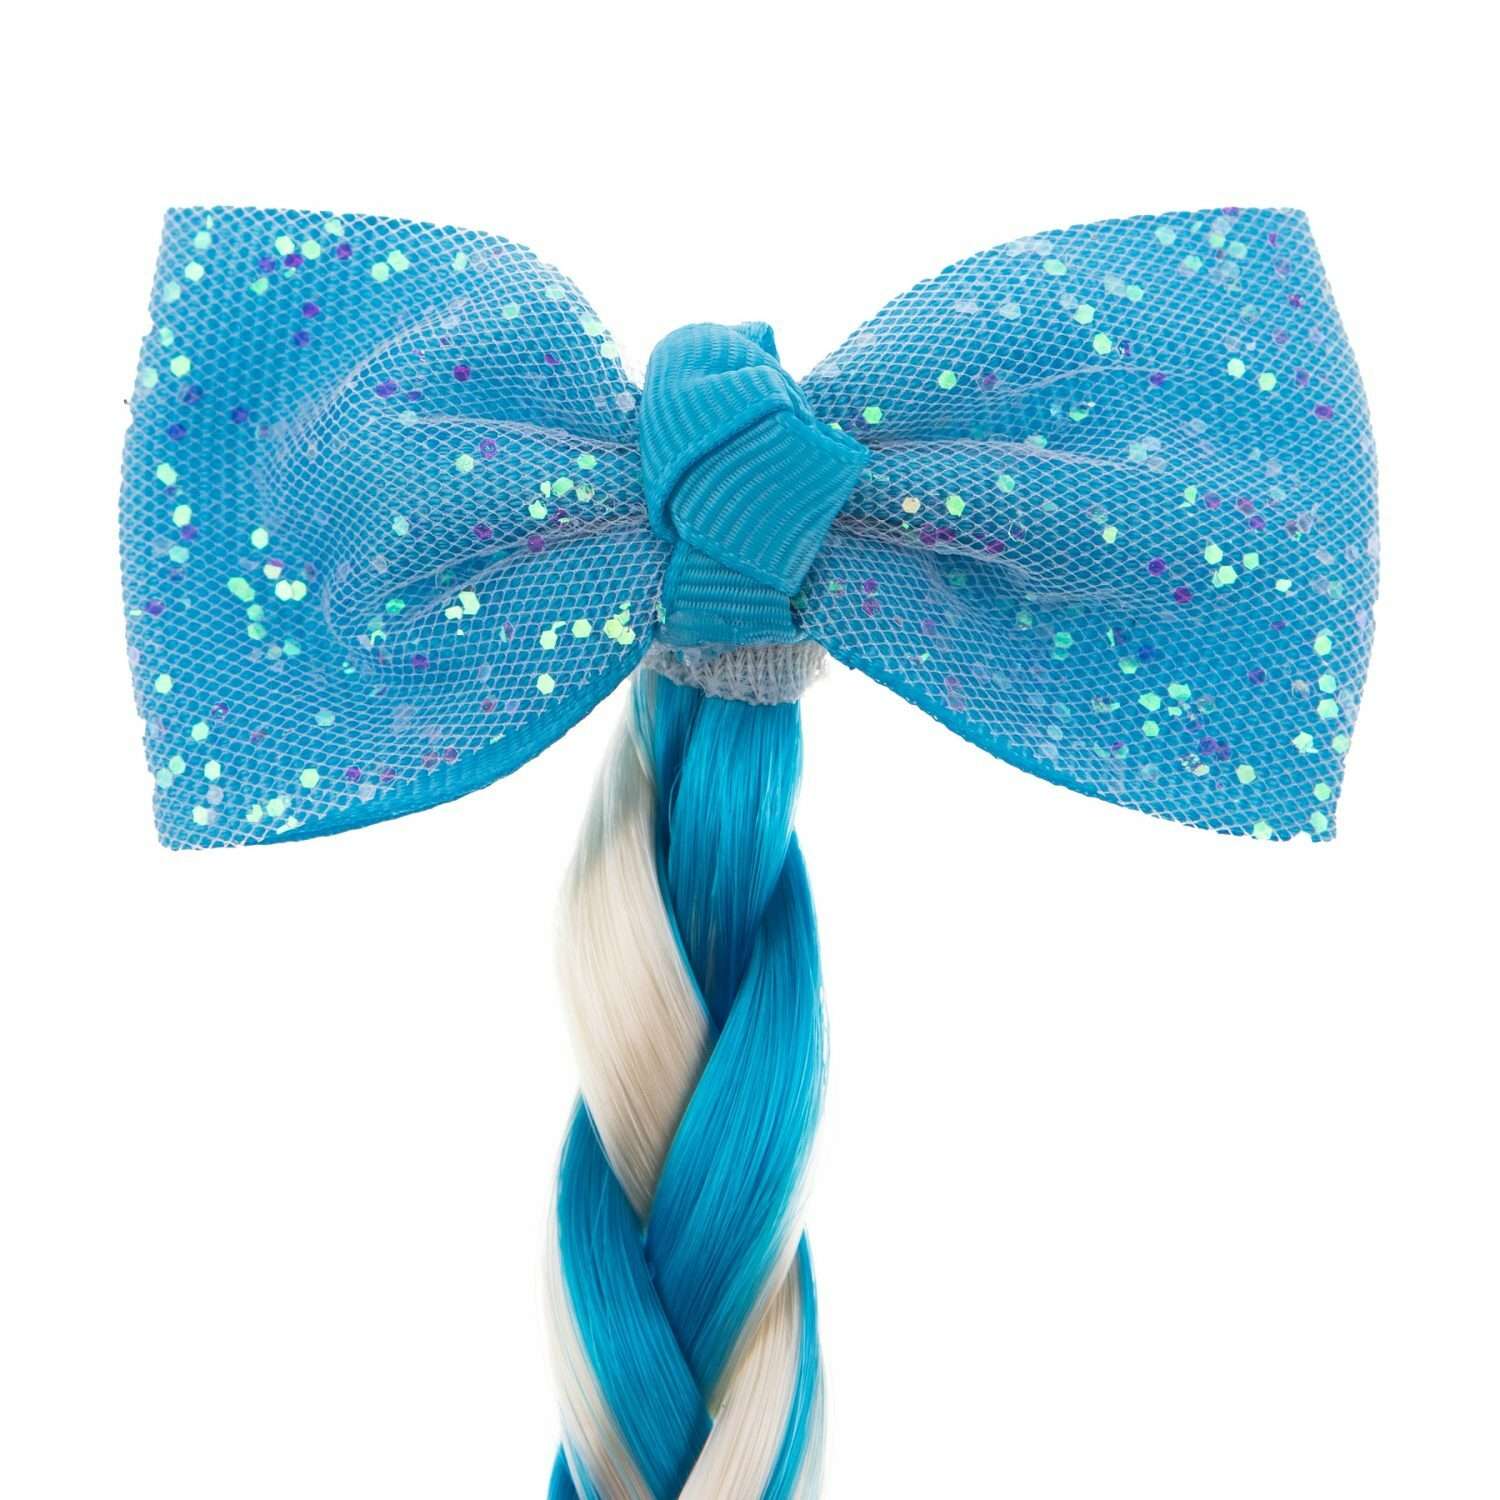 Цветные пряди для волос Lukky Fashion на заколках искусственные детские бело-голубой цвет 40 см аксессуары для девочек - фото 4